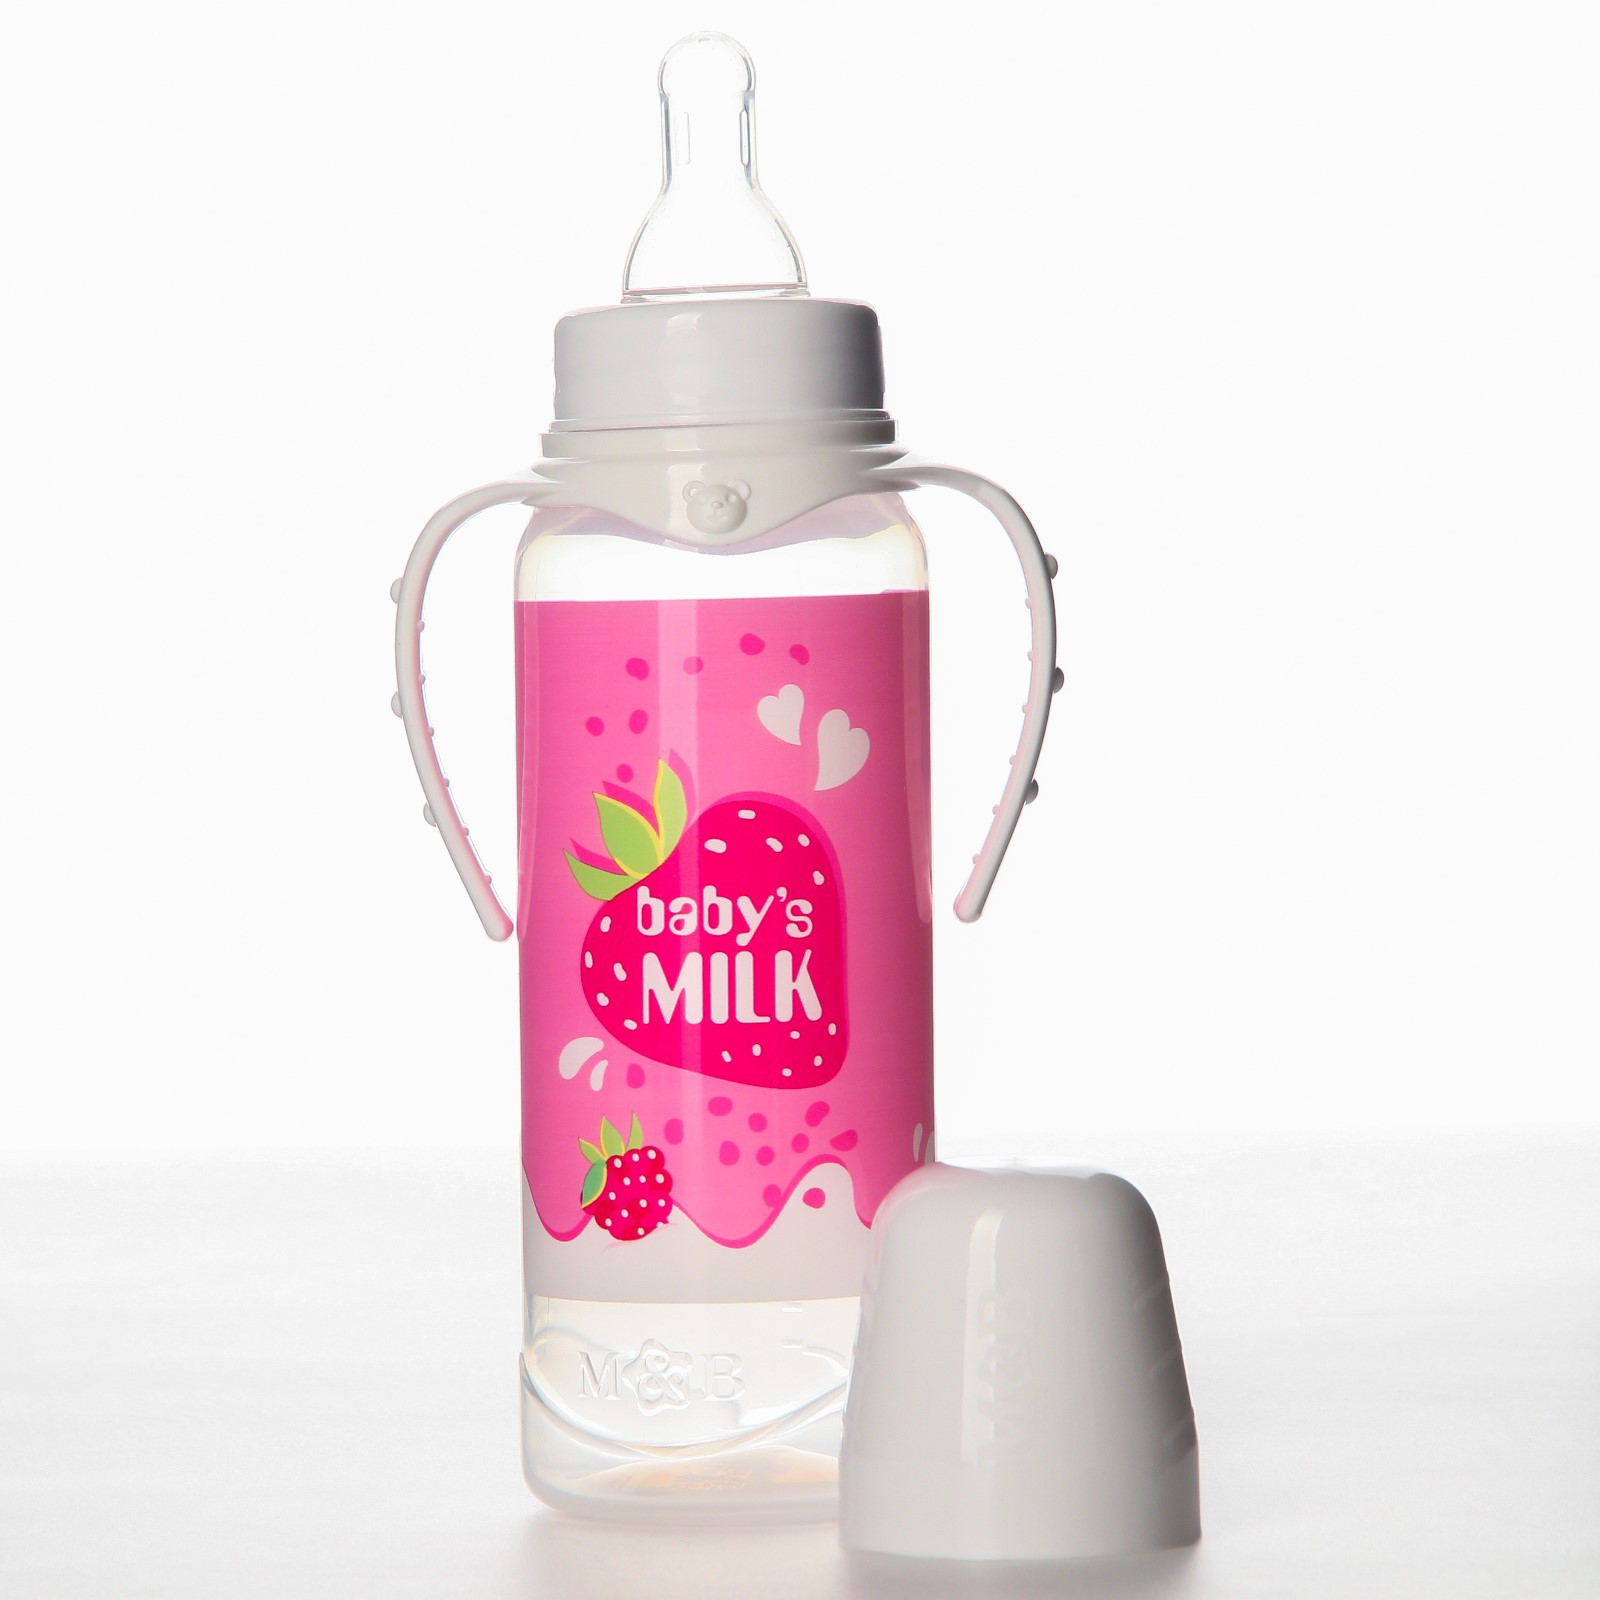 Бутылочка Mum and Baby для кормления «Клубничное молоко» 250 мл цилиндр с ручками - фото 2